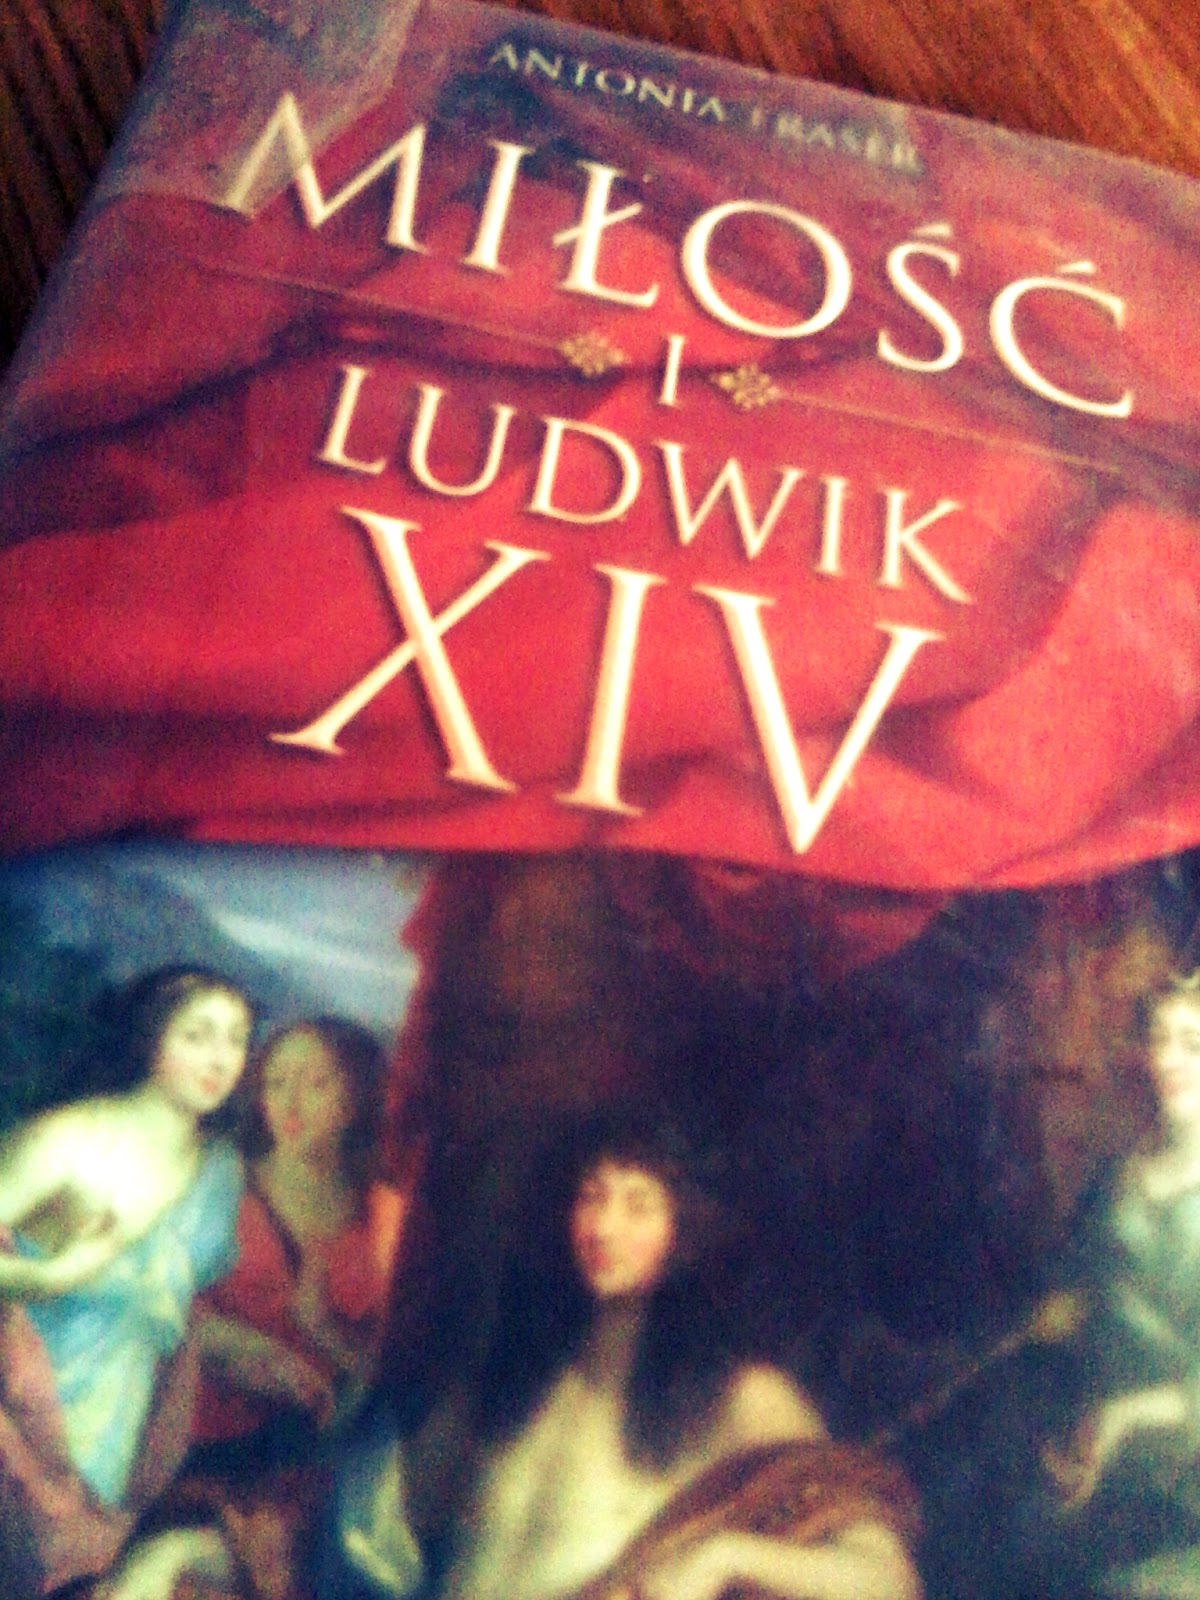 Antonia Fraser "Miłość i Ludwik XIV"